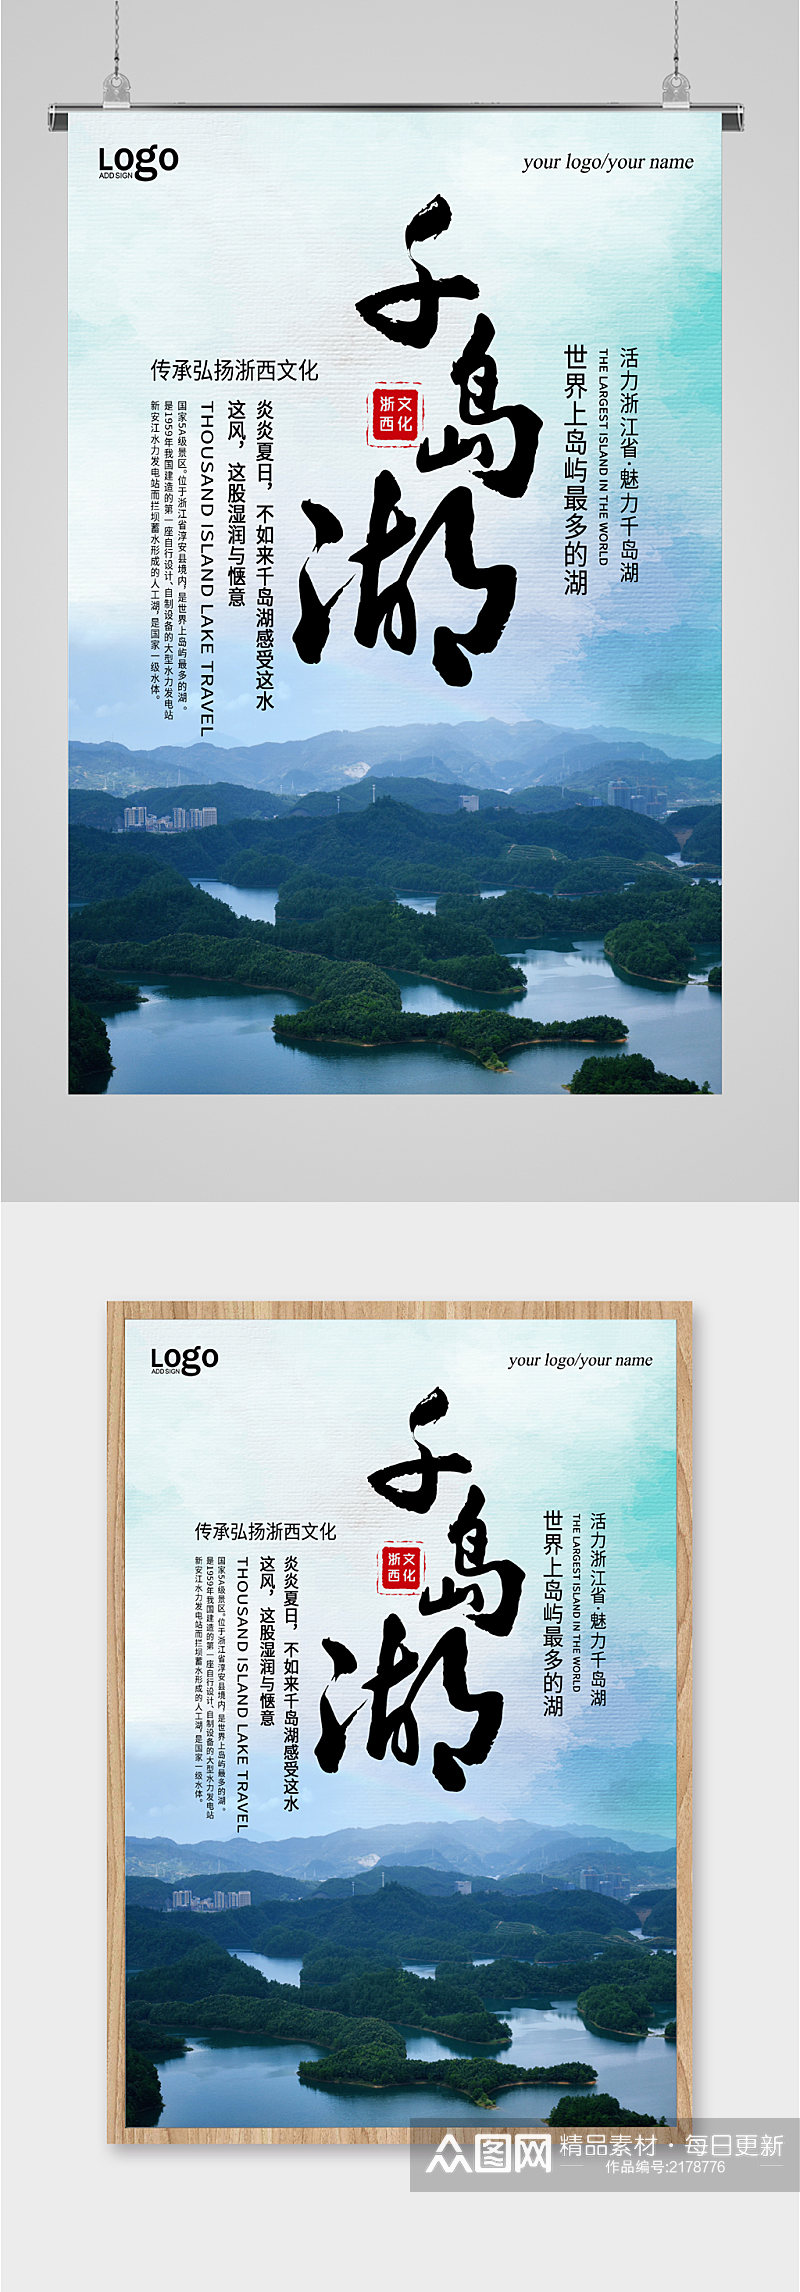 千岛湖风景旅游海报素材